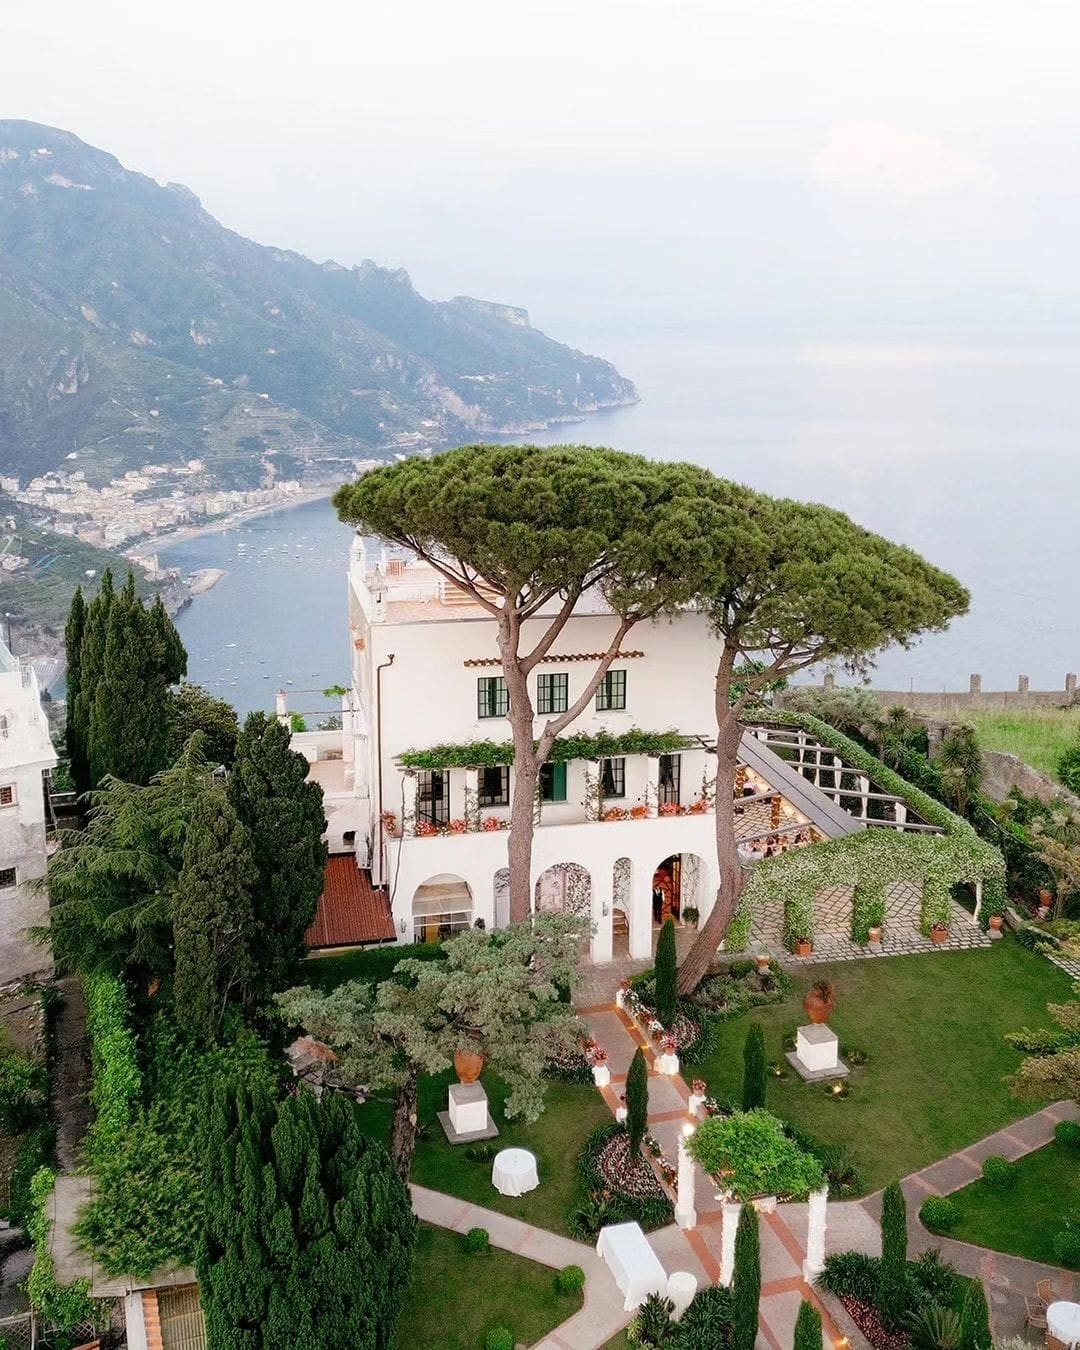 Villa Eva en la Costa Amalfitana, una elegante construcción de estilo liberty con jardines extensos y vistas panorámicas, perfecta para bodas y eventos exclusivos.